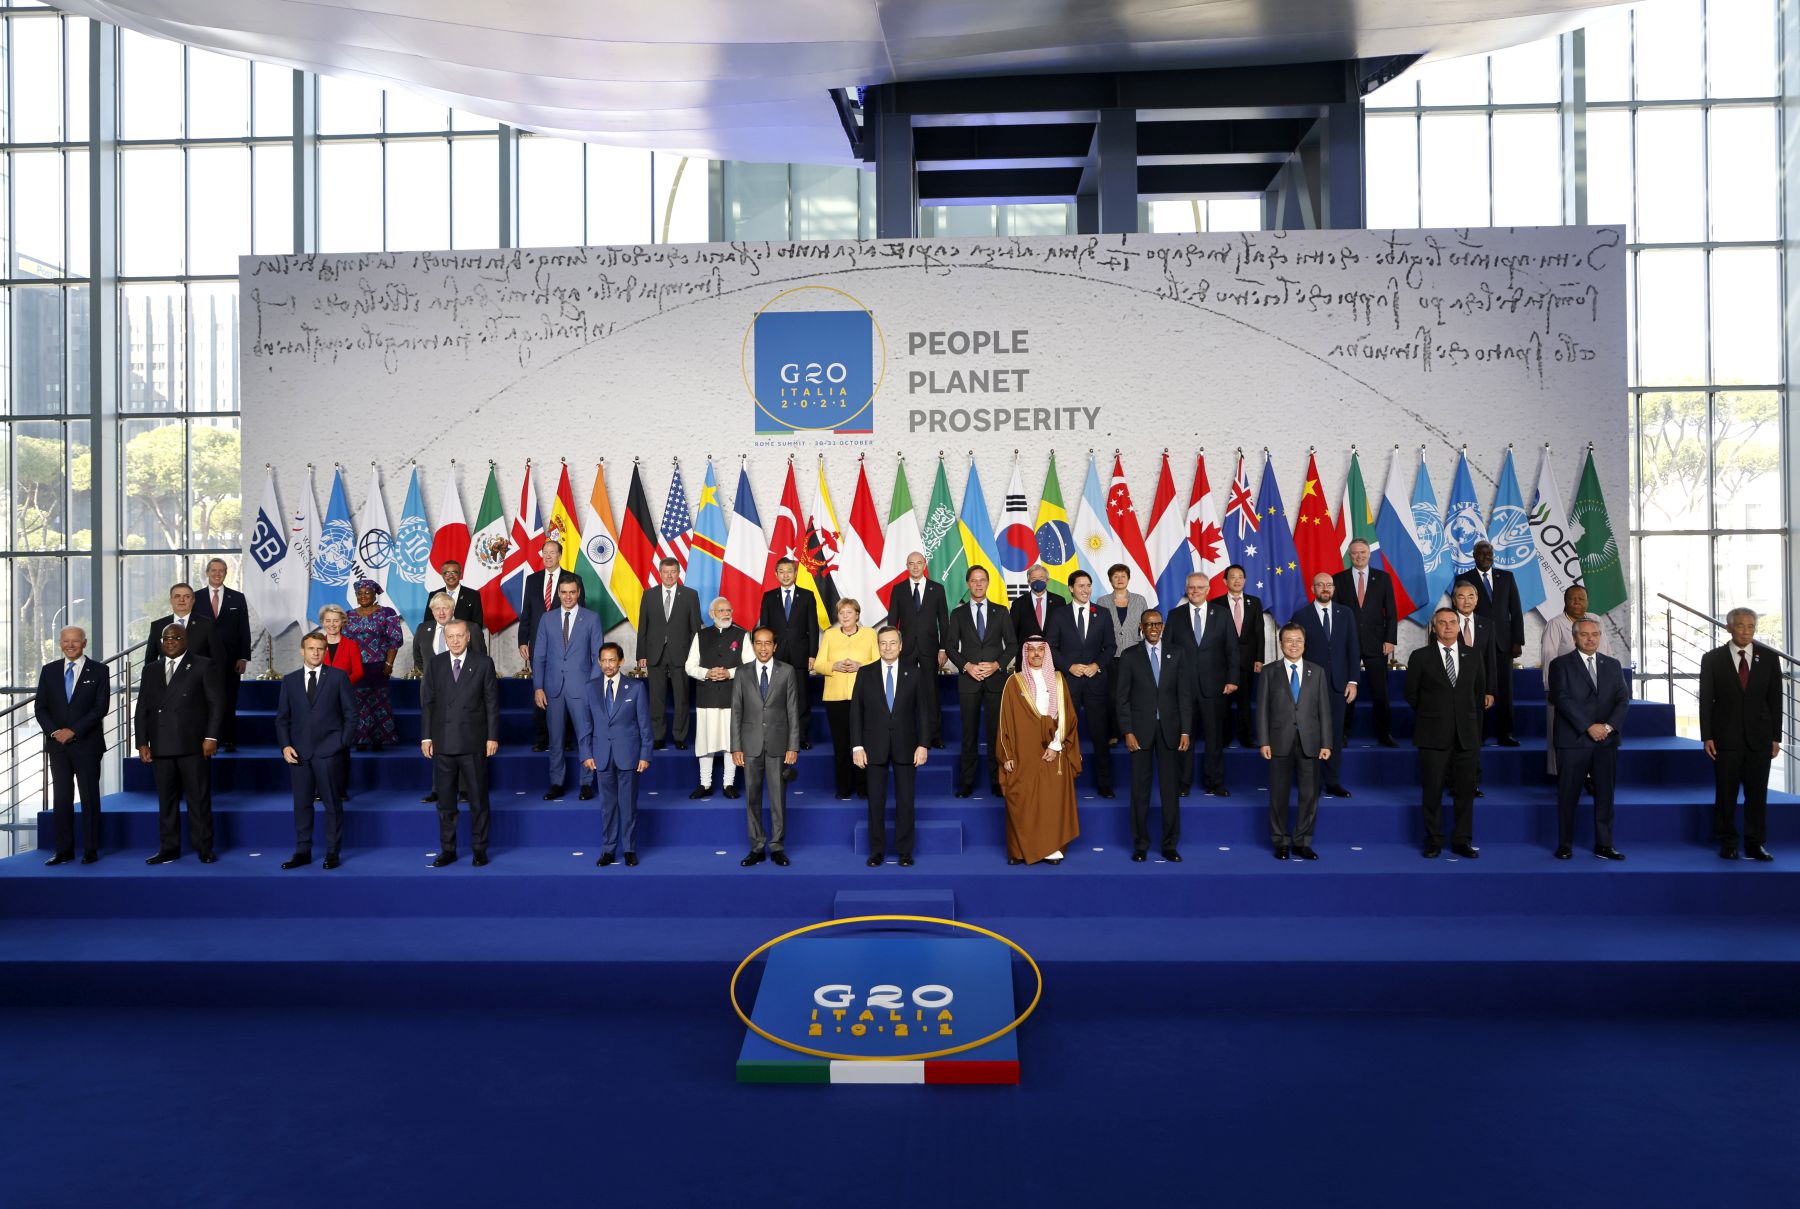 Mario Draghi: A G20-csoport hozzáállása hirtelen megváltozott